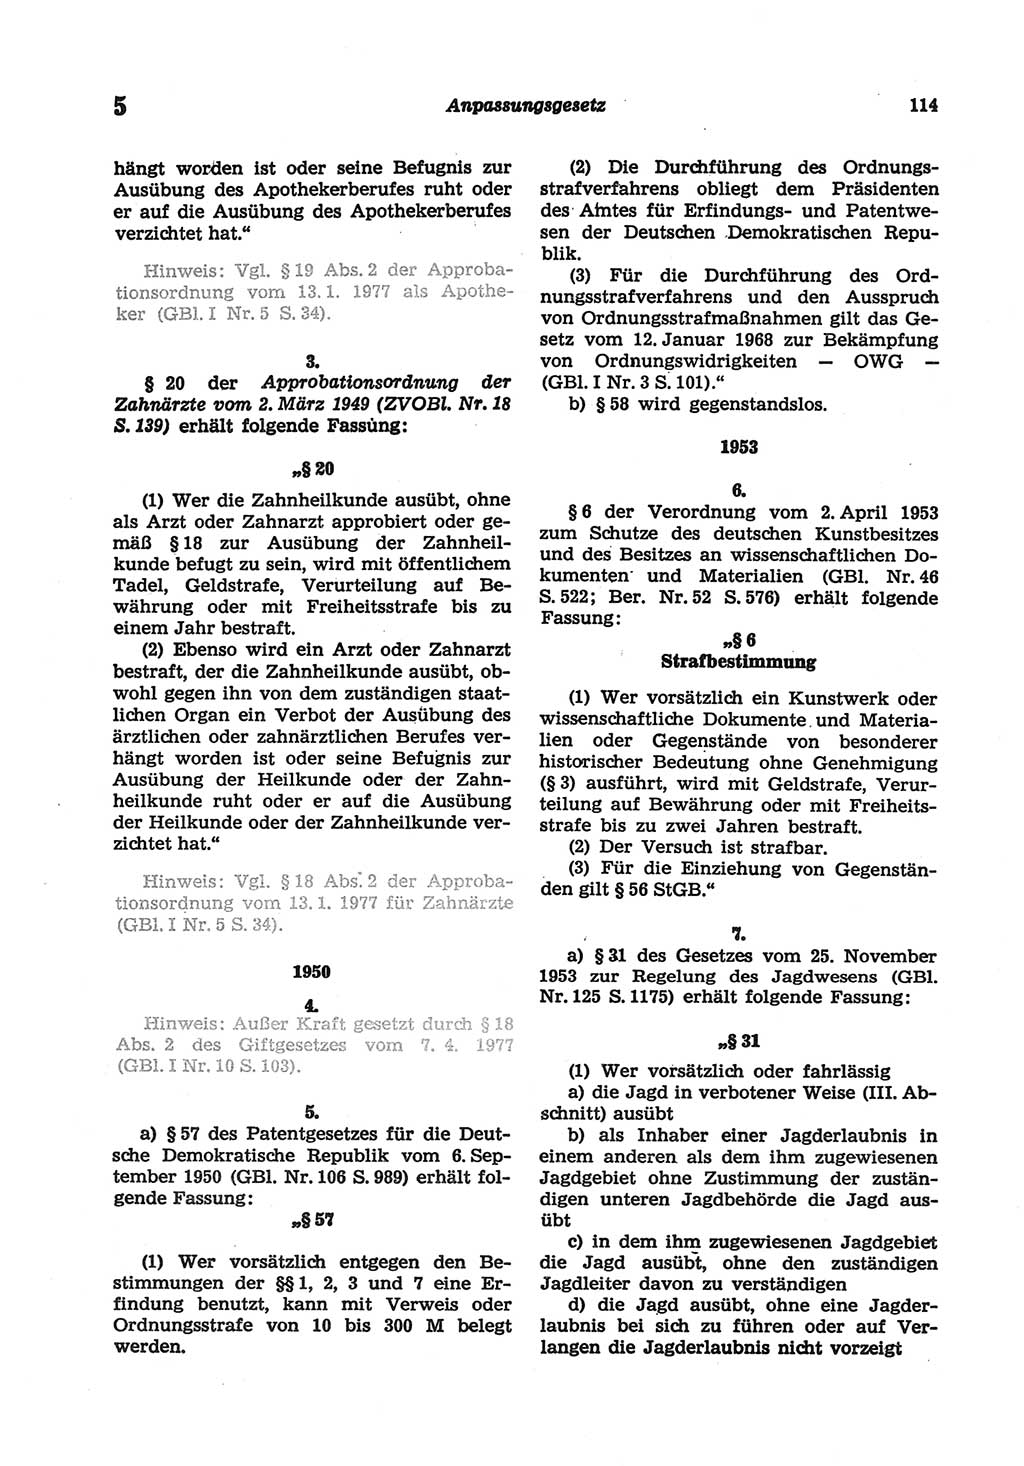 Strafgesetzbuch (StGB) der Deutschen Demokratischen Republik (DDR) und angrenzende Gesetze und Bestimmungen 1977, Seite 114 (StGB DDR Ges. Best. 1977, S. 114)